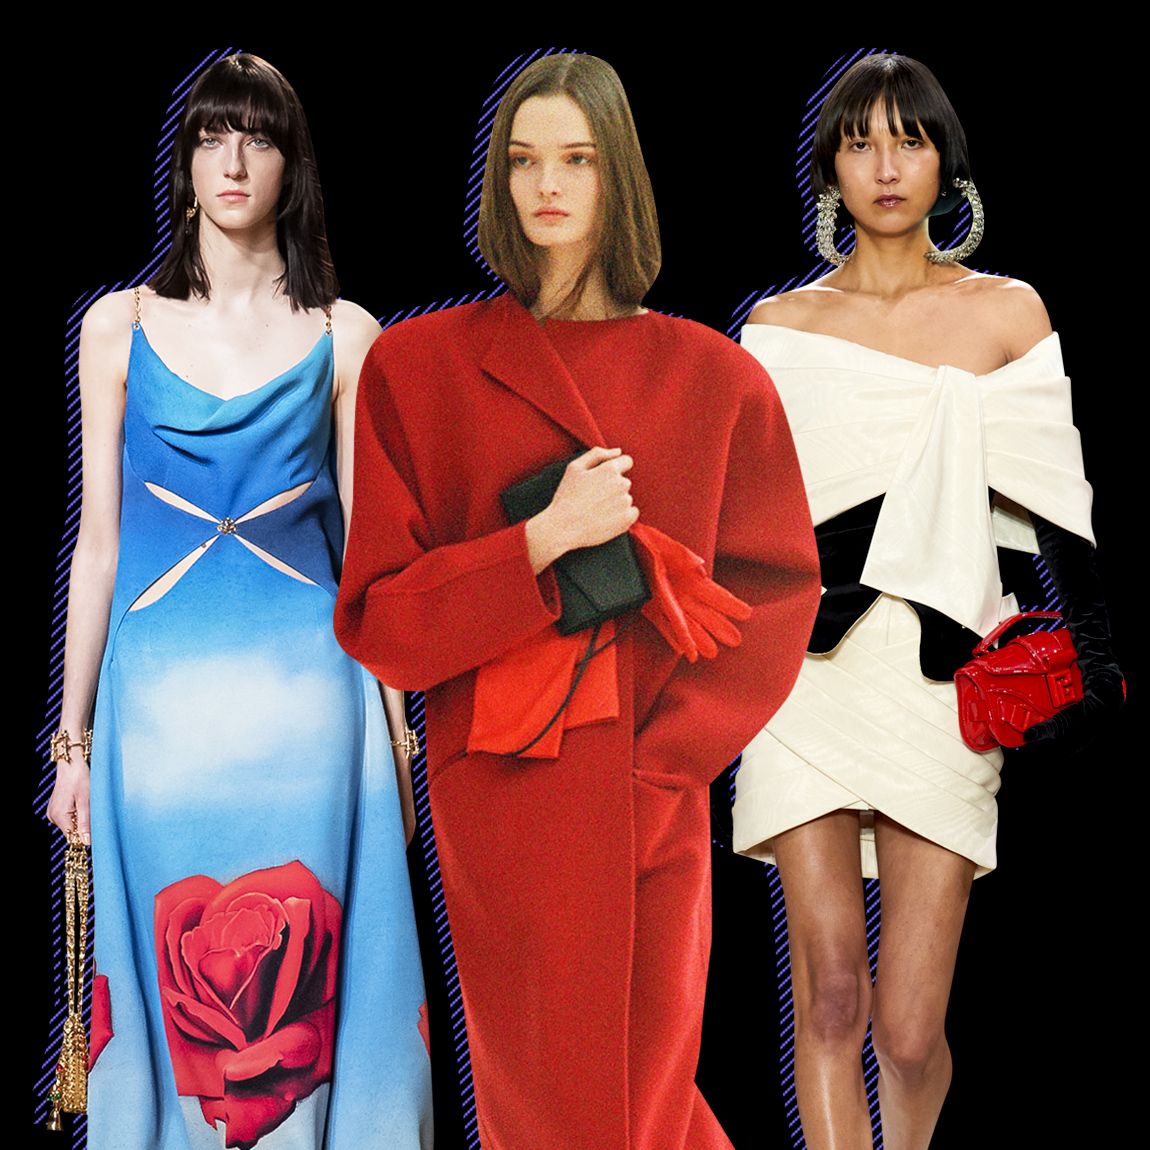 Cathy Horyn Paris Fashion Week Review: The Row, Balmain